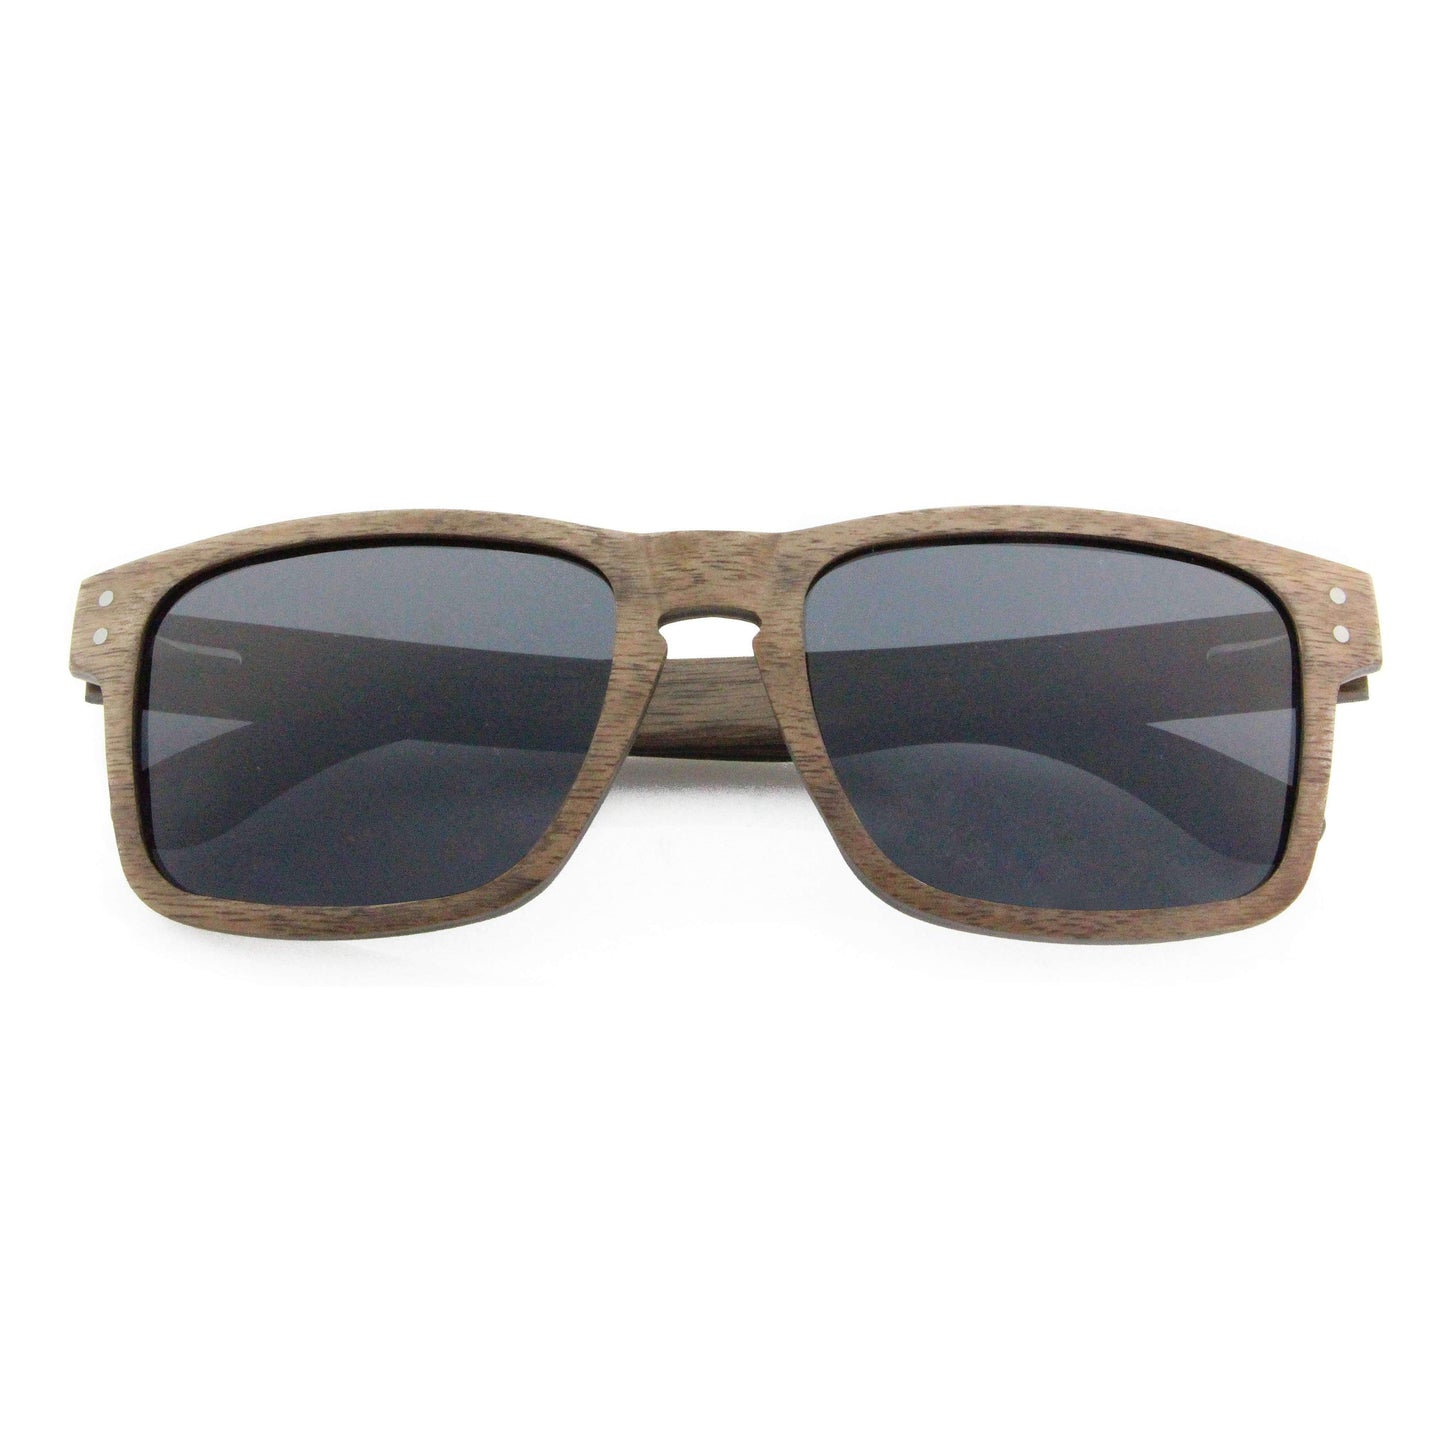 Vilo Wooden Sunglasses - Jasper: